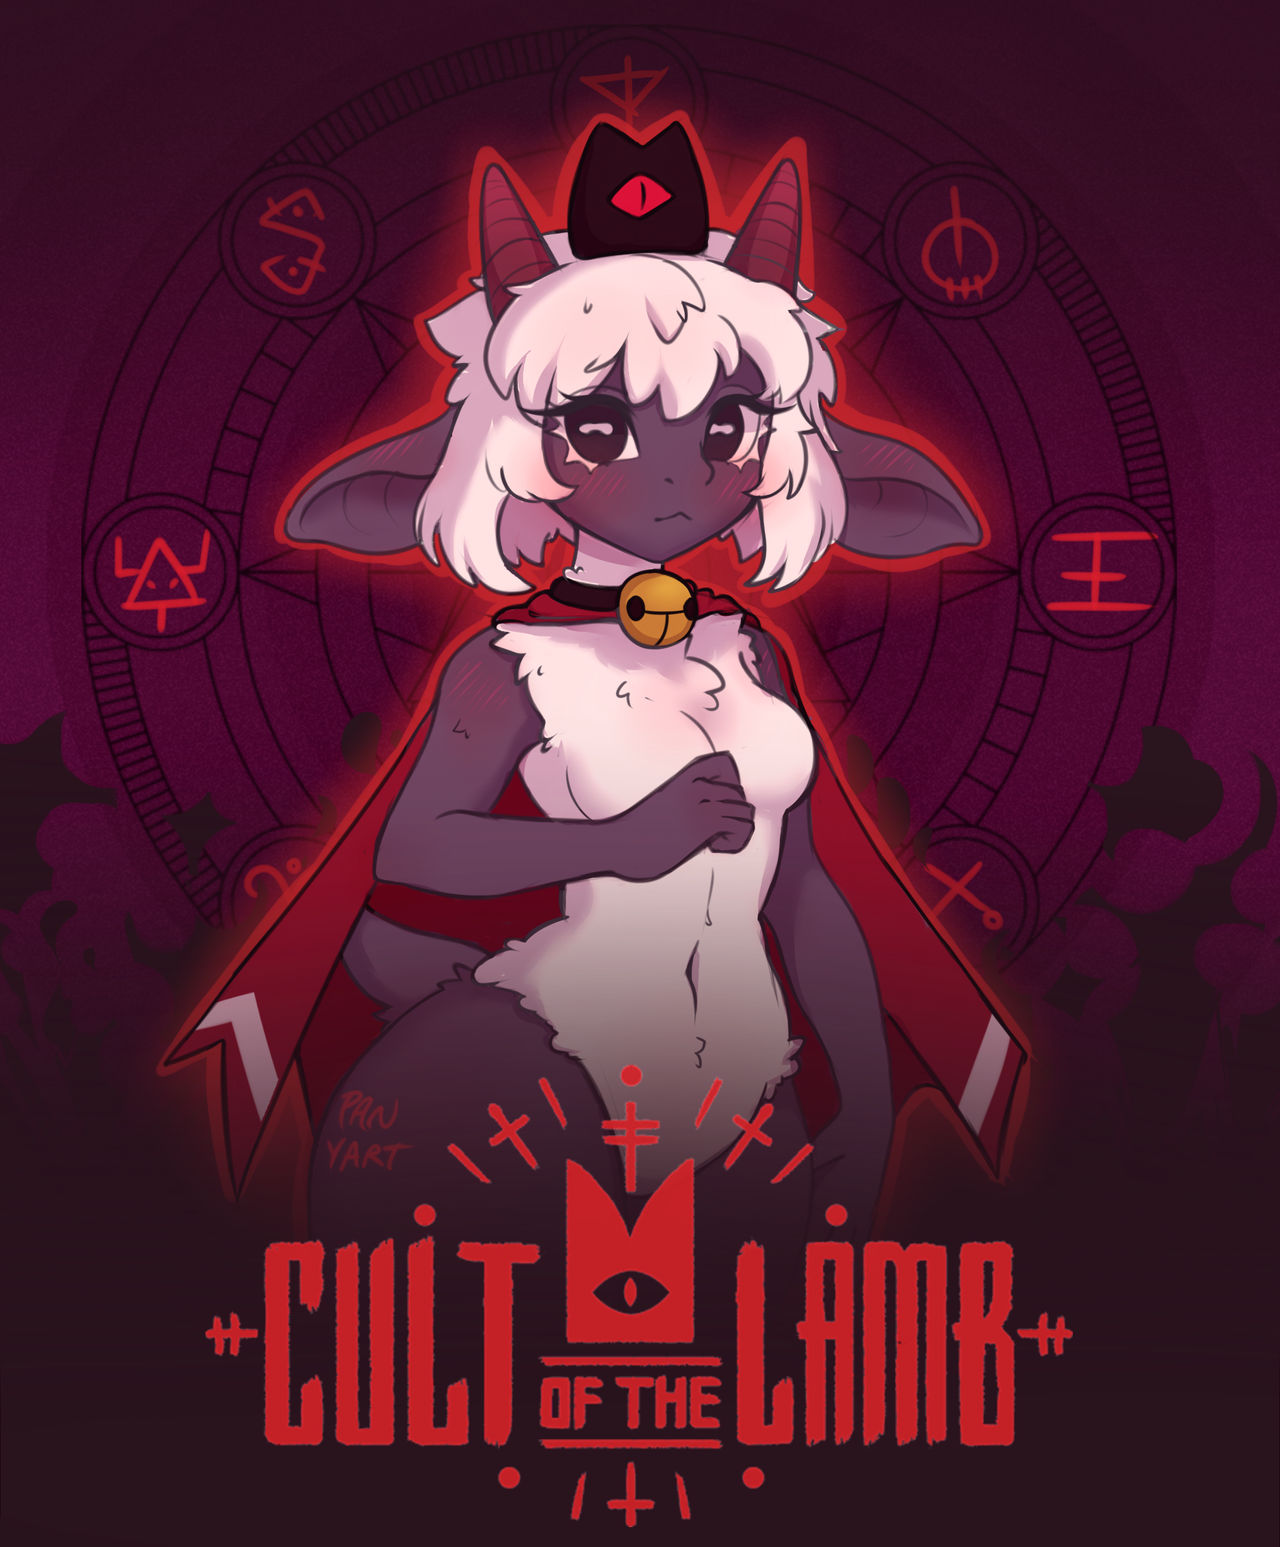 Cult of the lamb by KairaArtAbsurd on DeviantArt